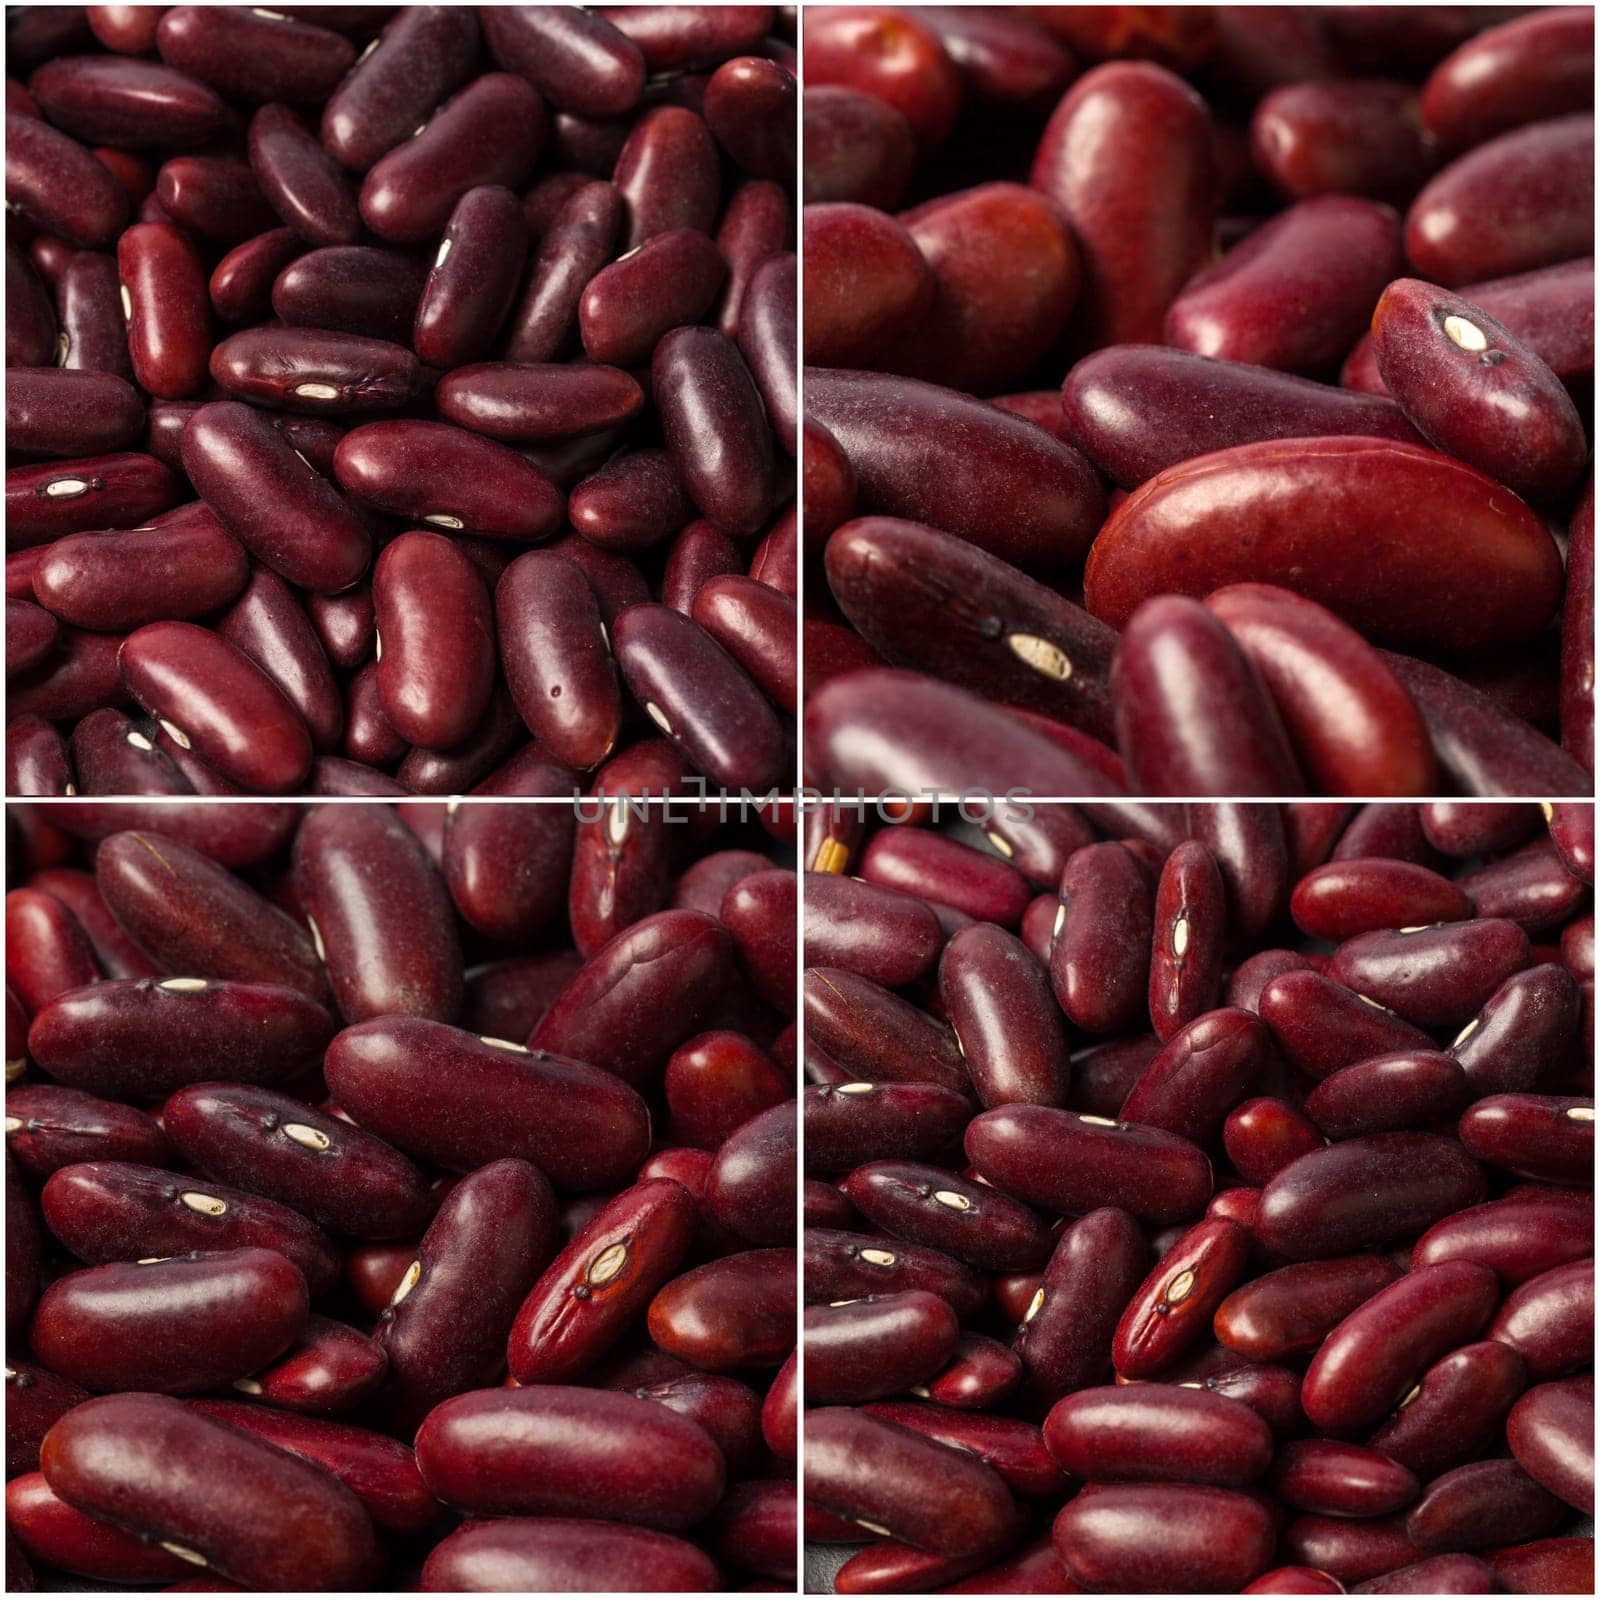 azuki beans , red beans